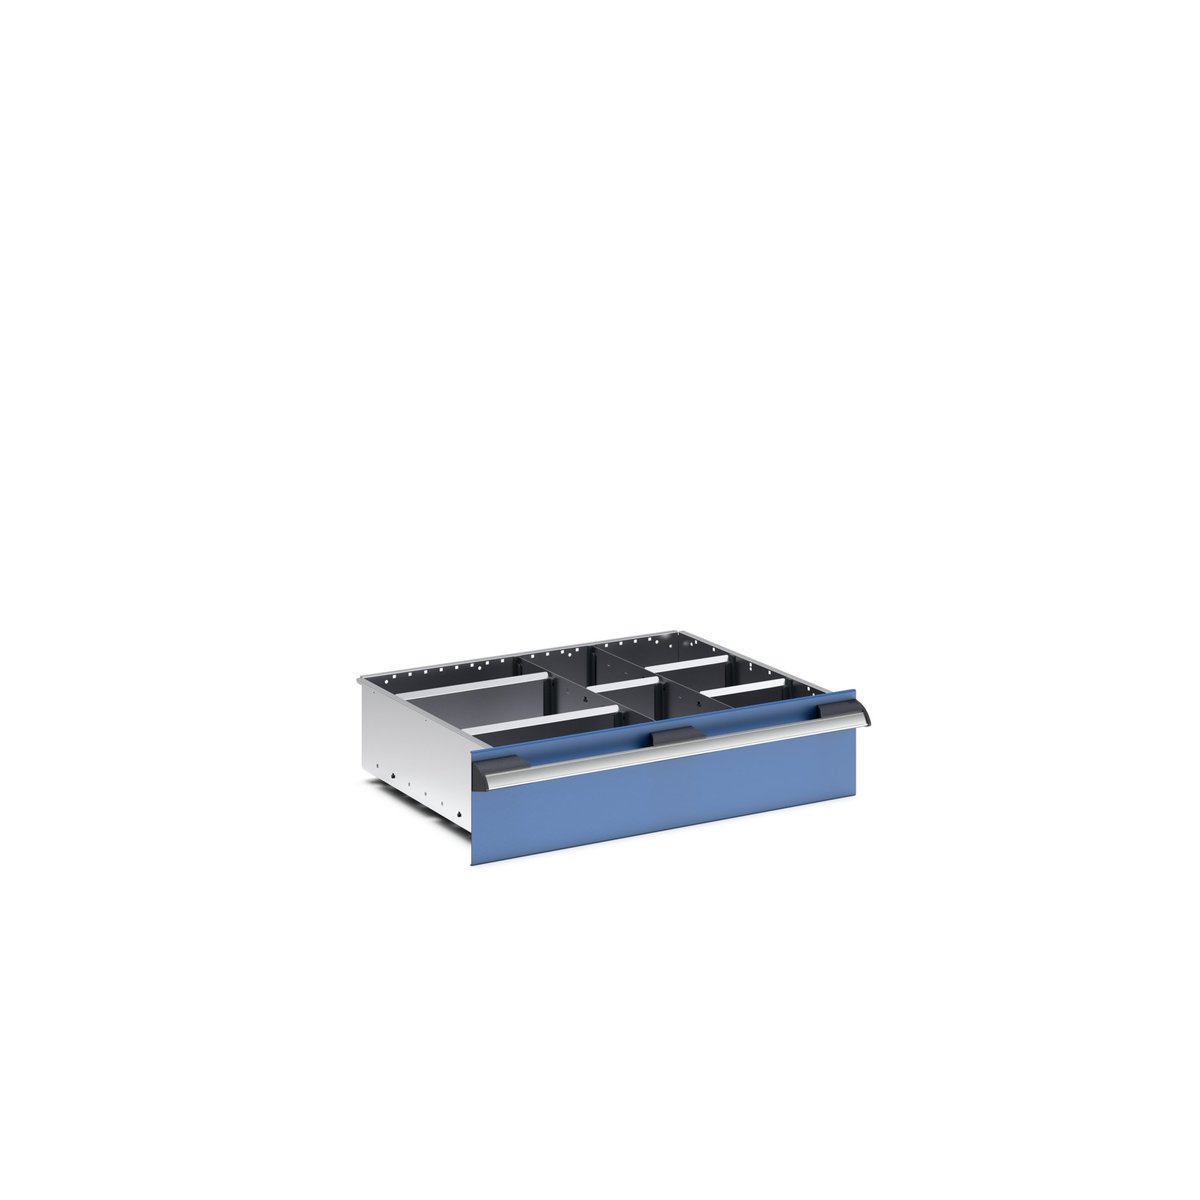 43020638.51 - cubio adjustable divider kit